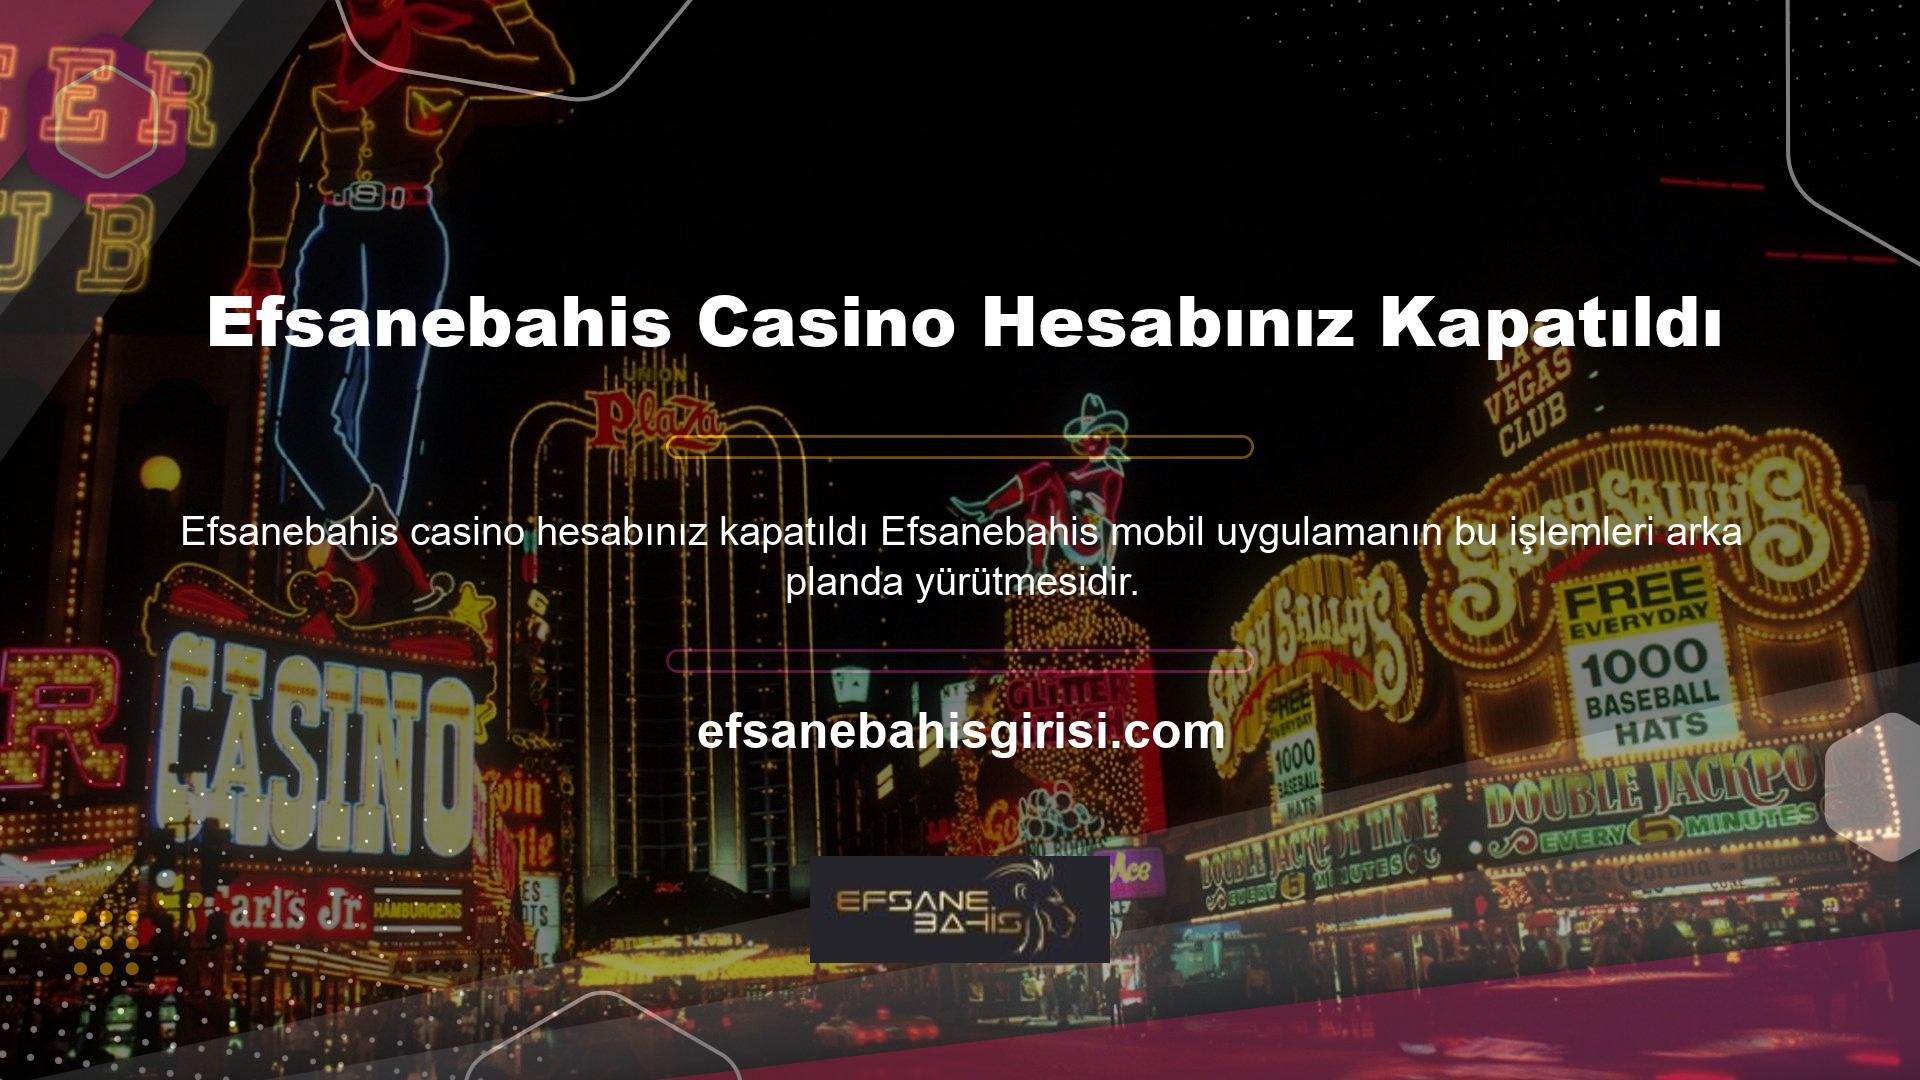 Efsanebahis Casino hesabınız kapatılmıştır